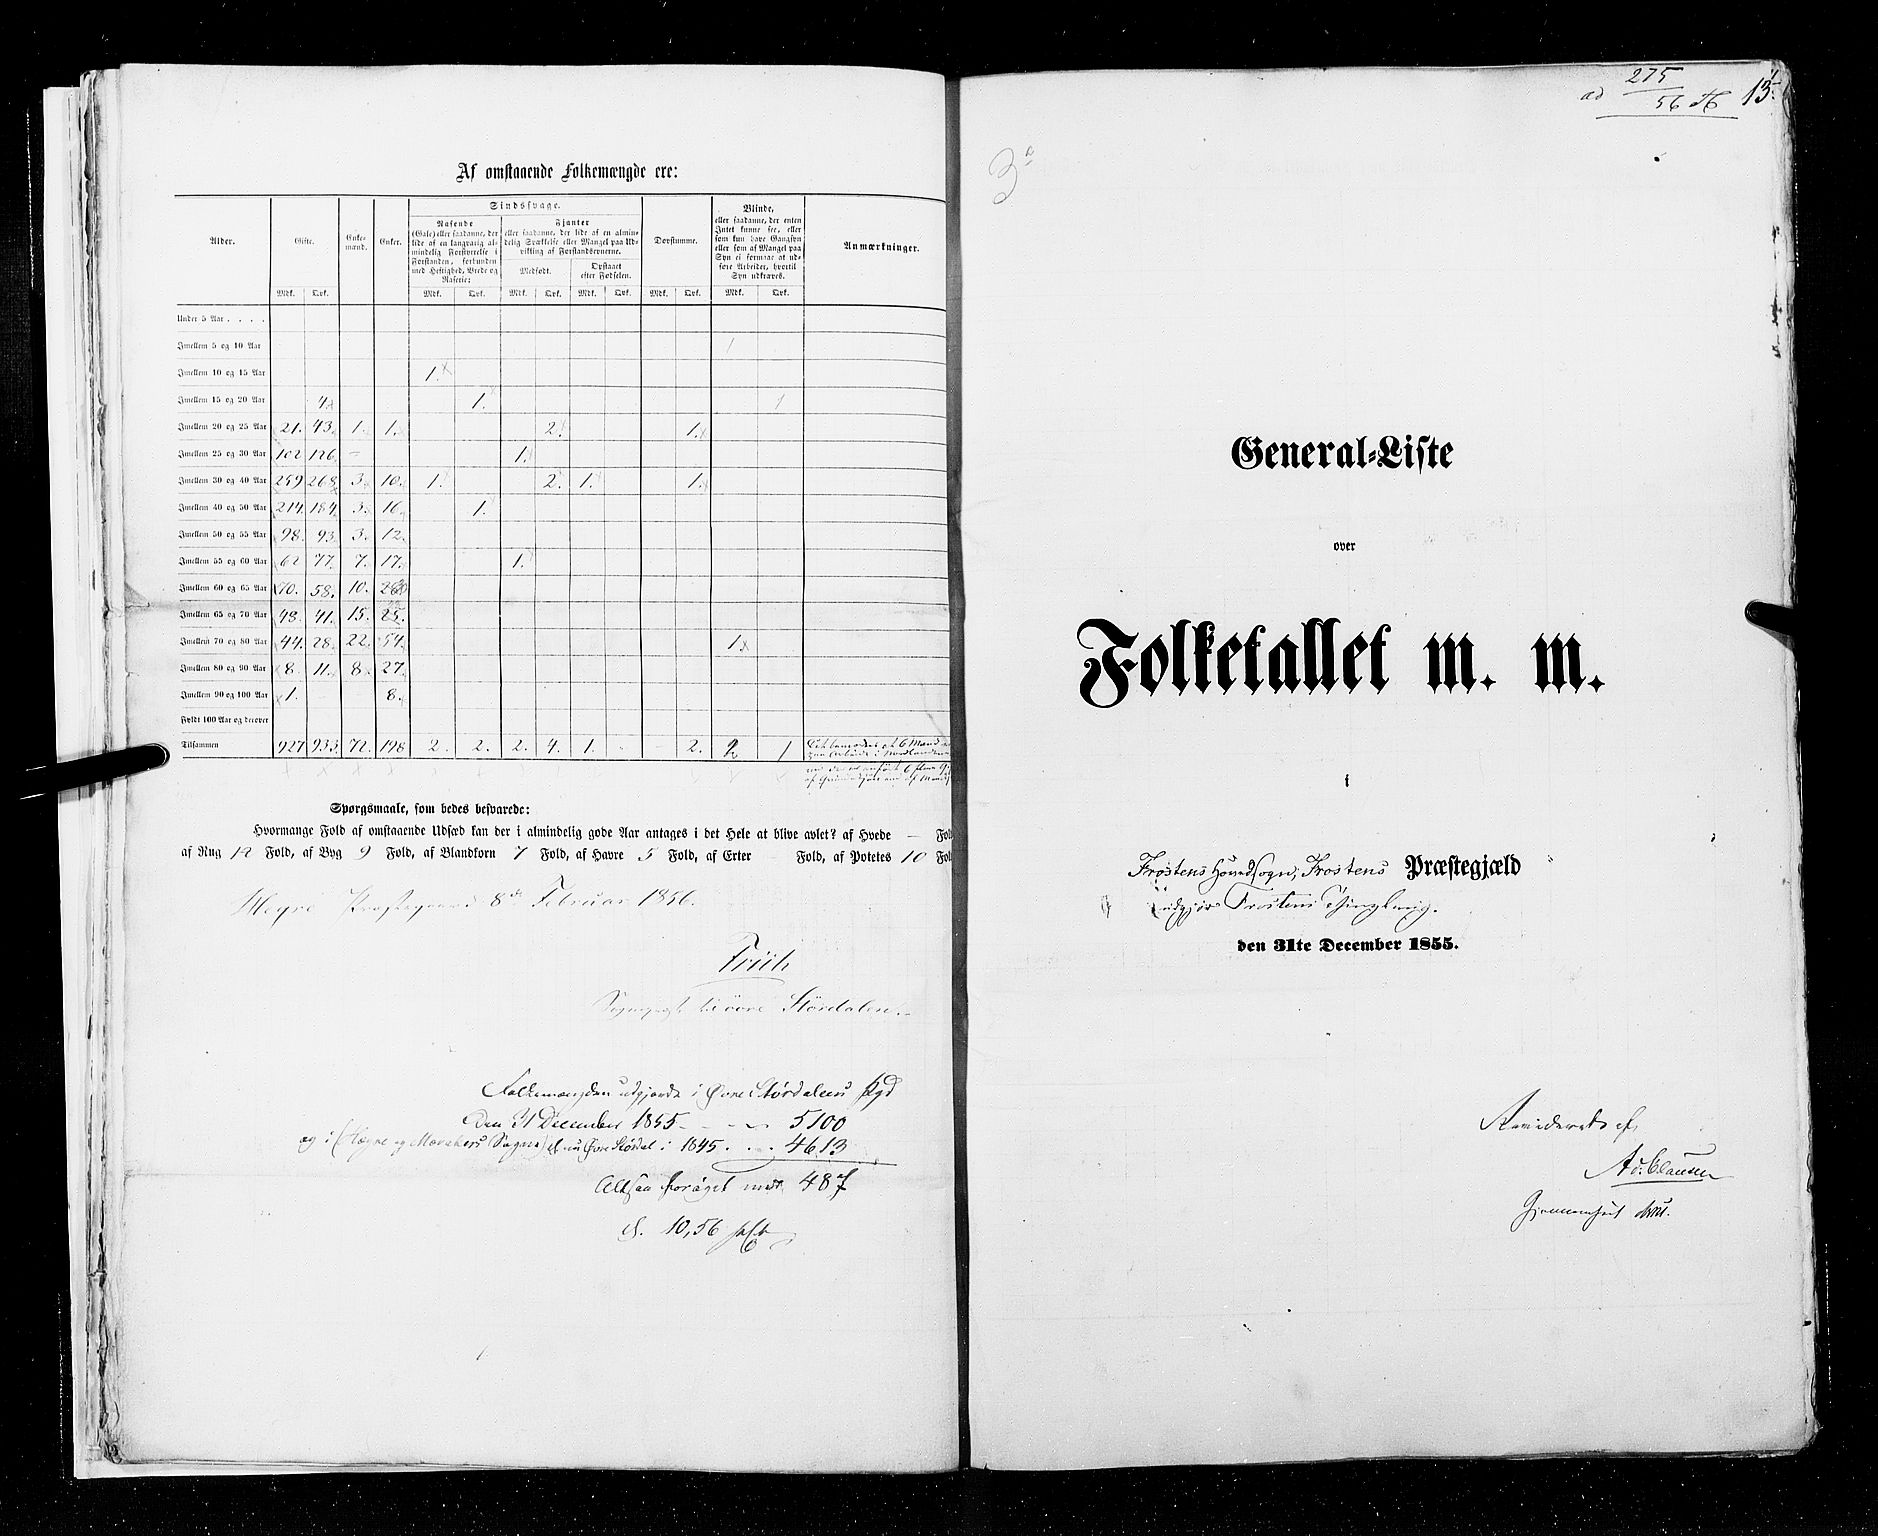 RA, Census 1855, vol. 6A: Nordre Trondhjem amt og Nordland amt, 1855, p. 13